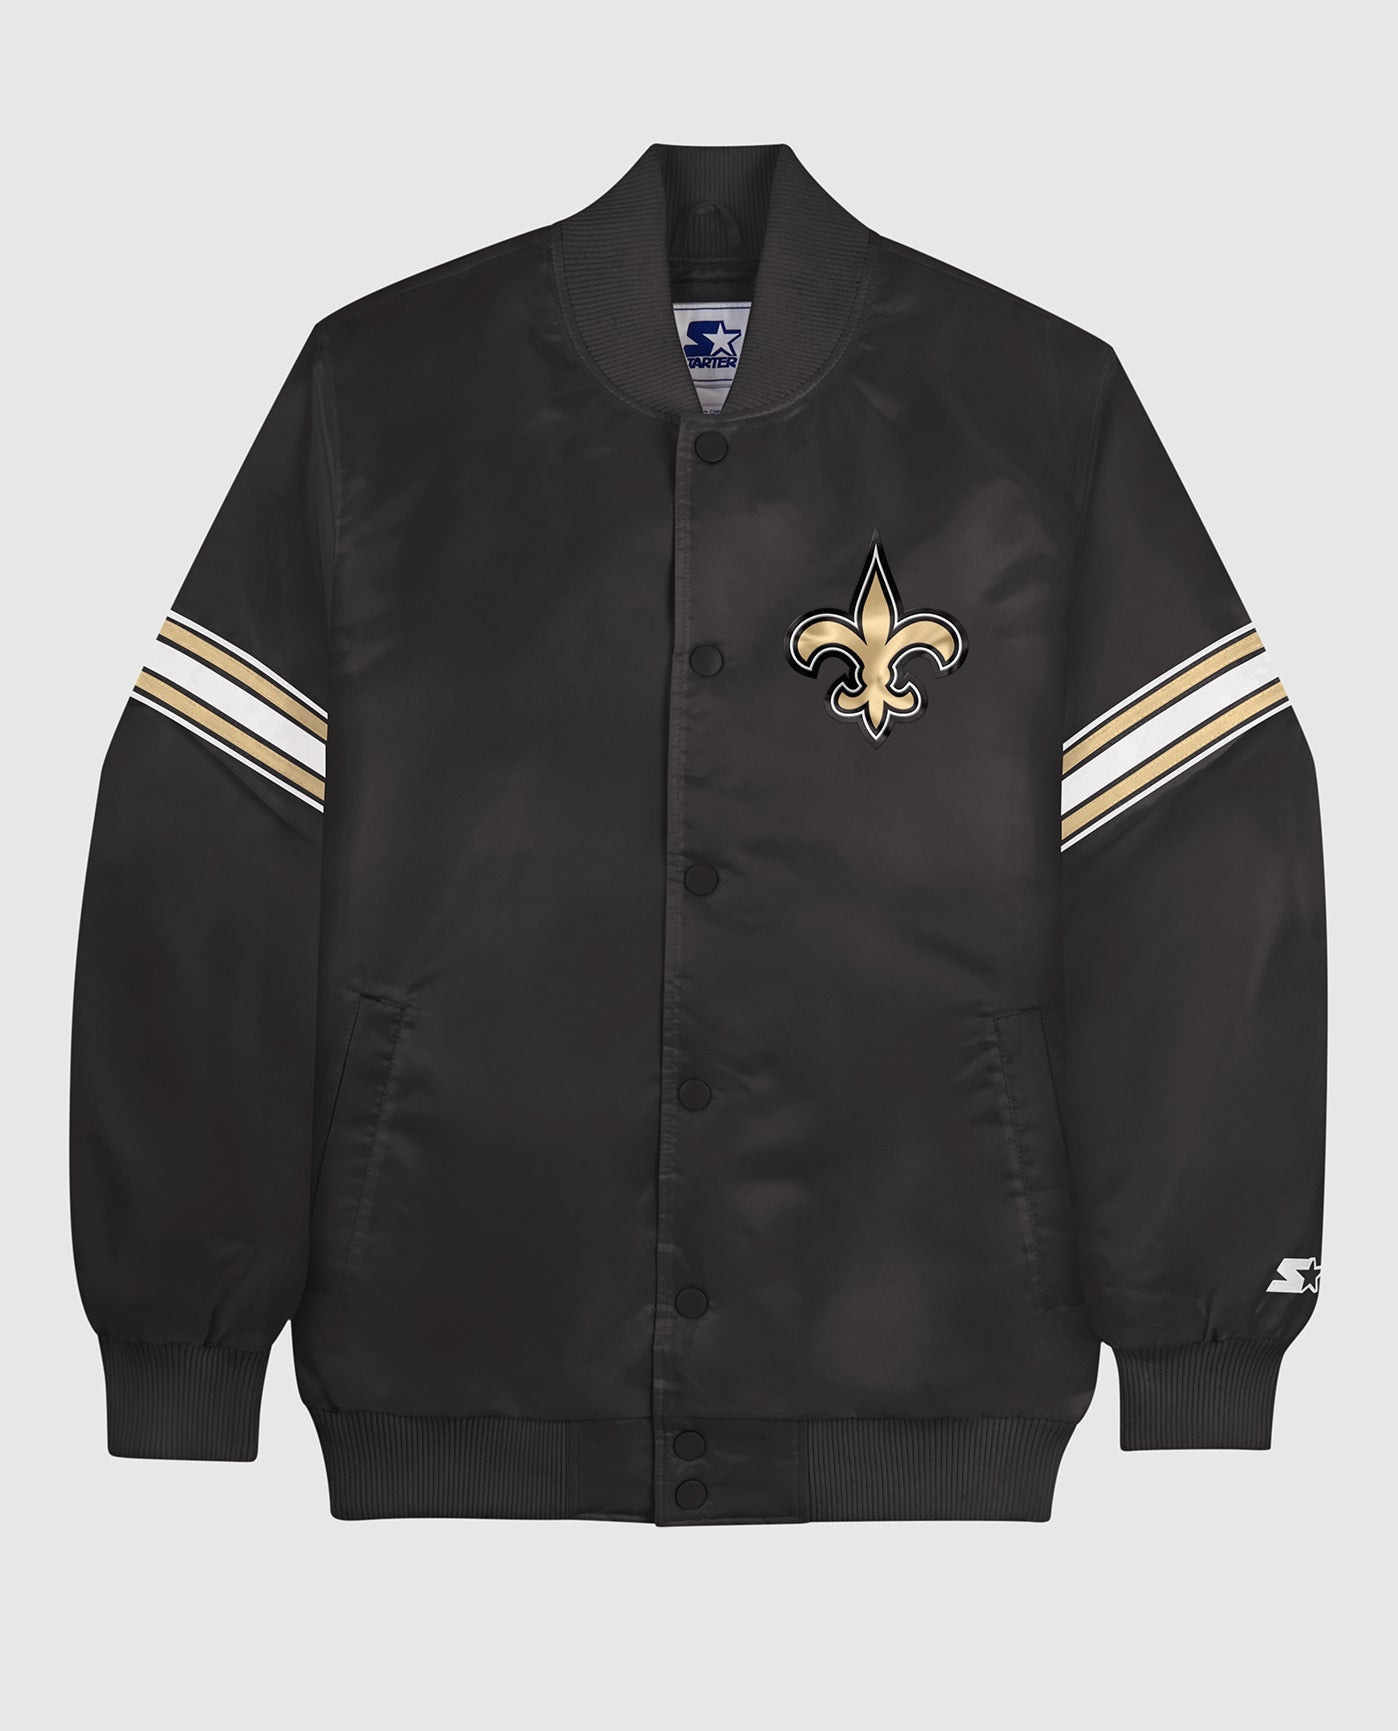 new orleans saints varsity jacket